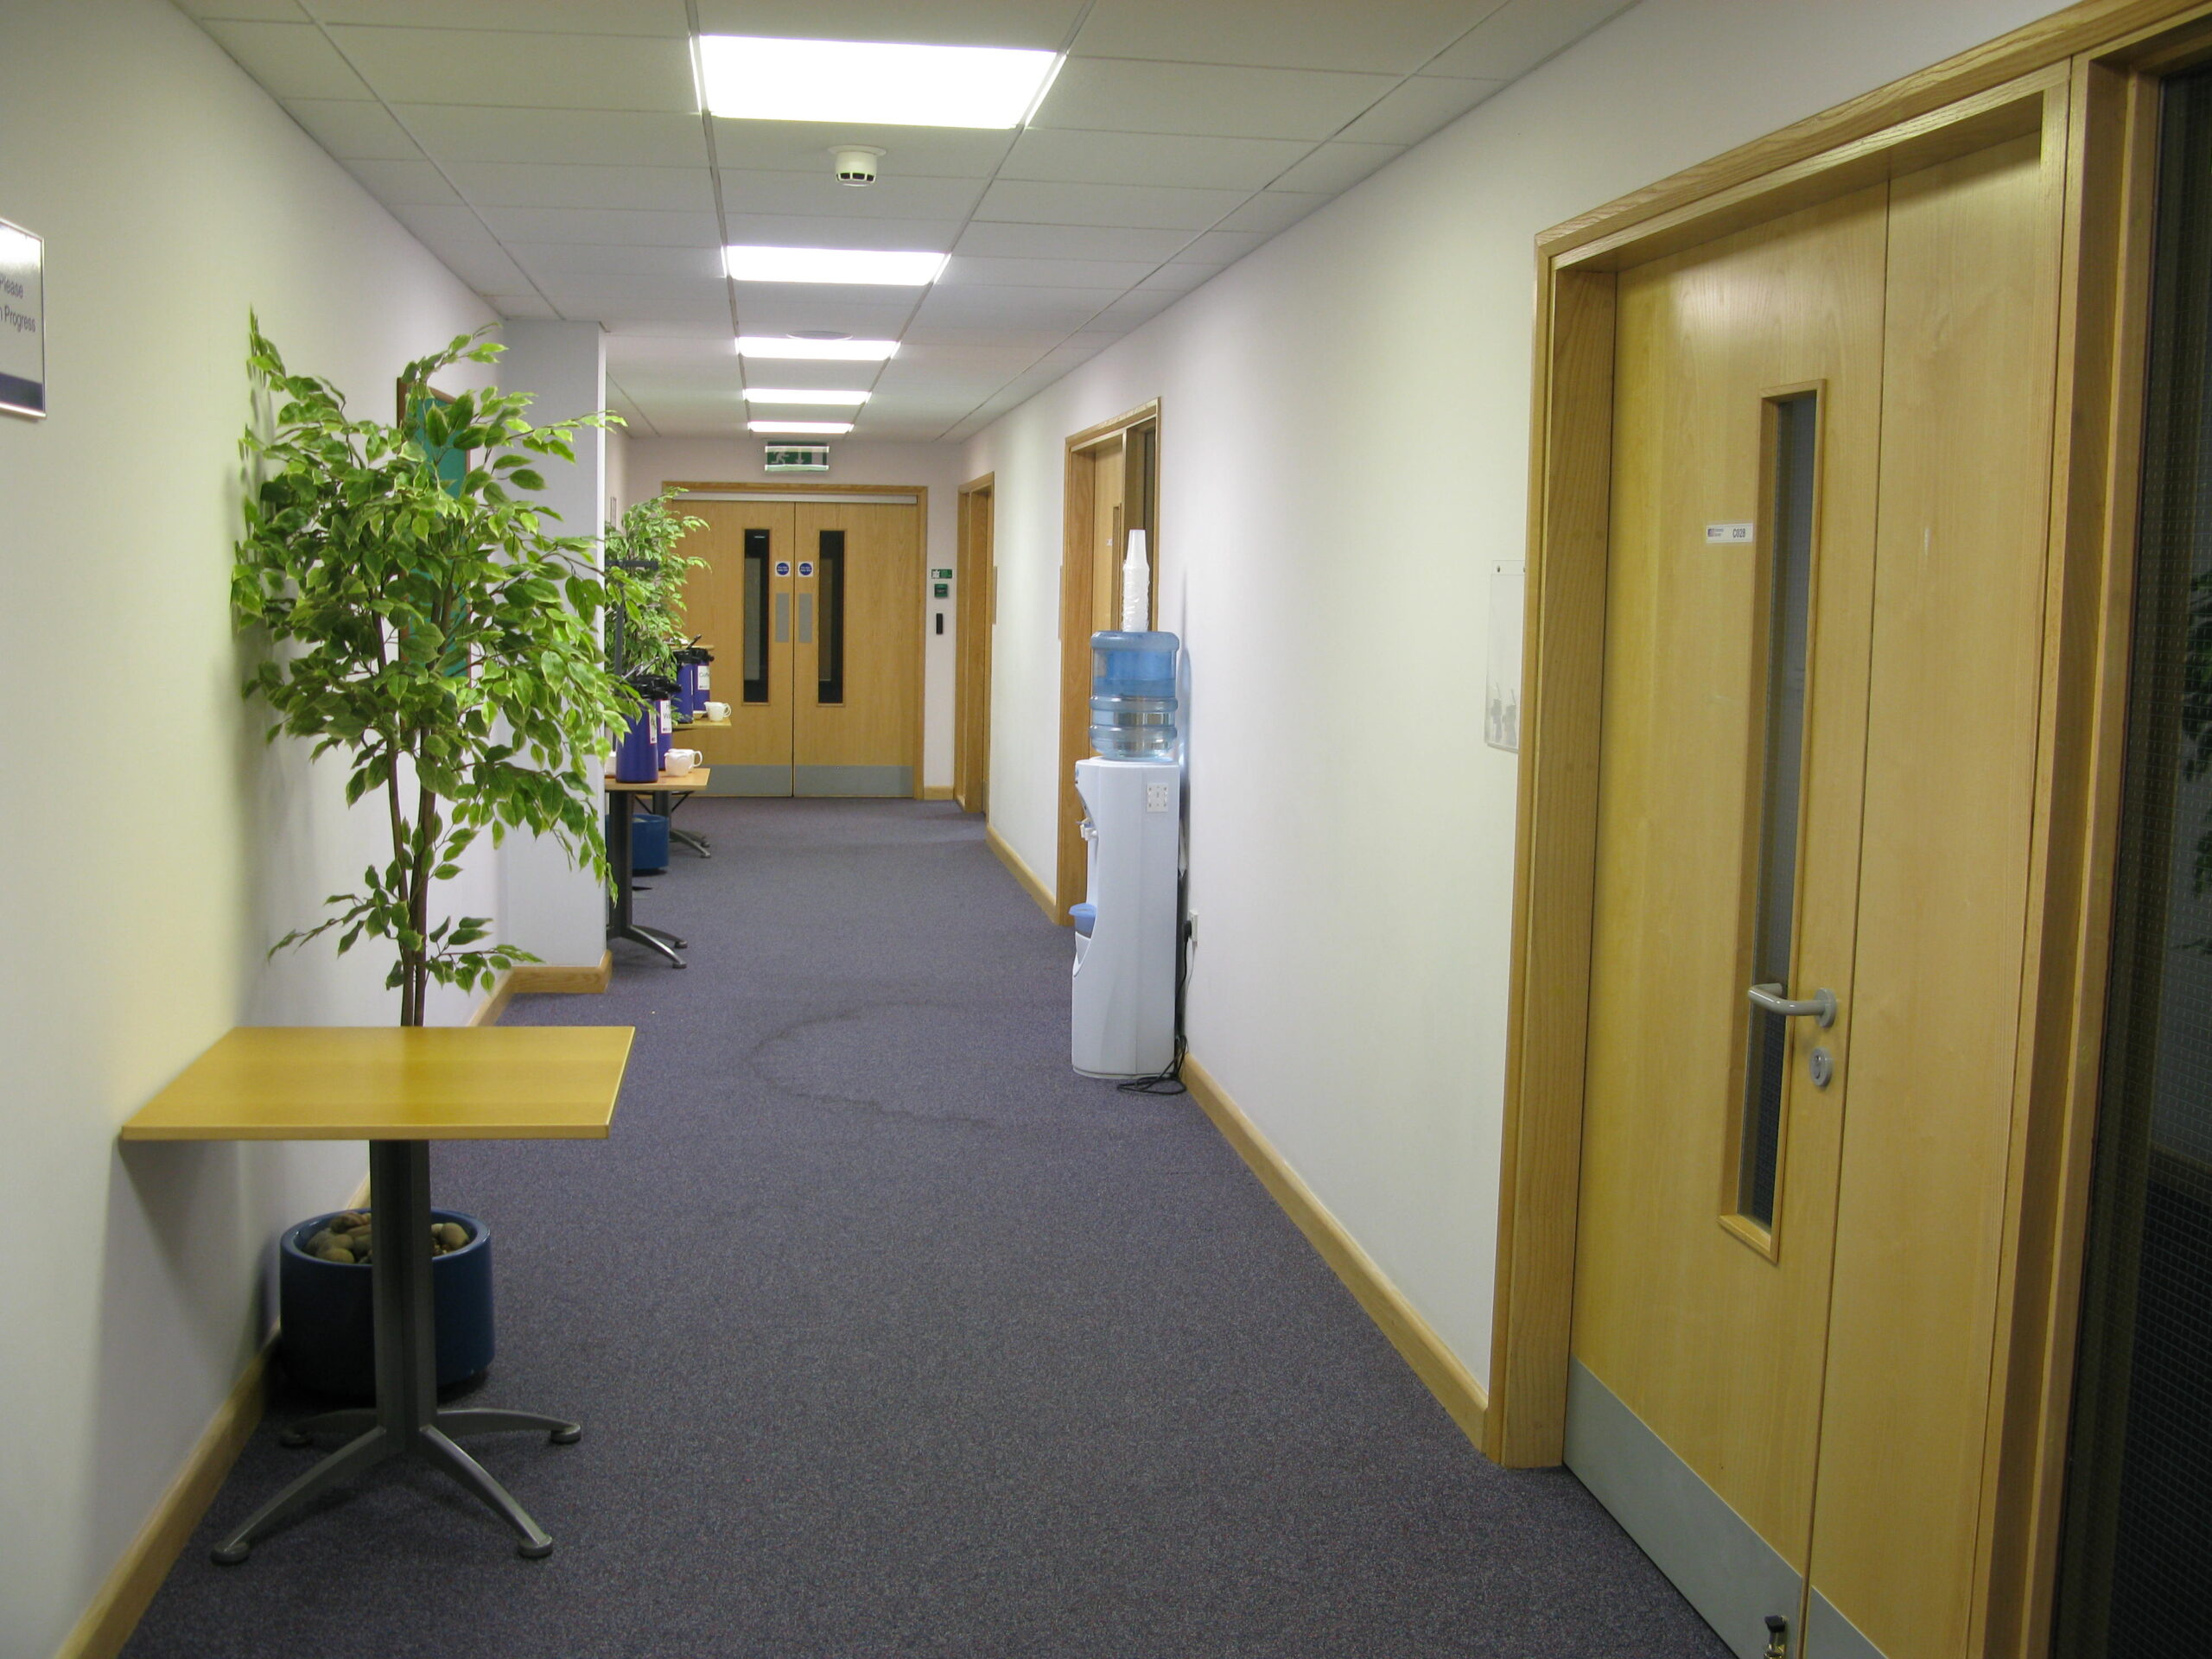 Business Centre training room corridor